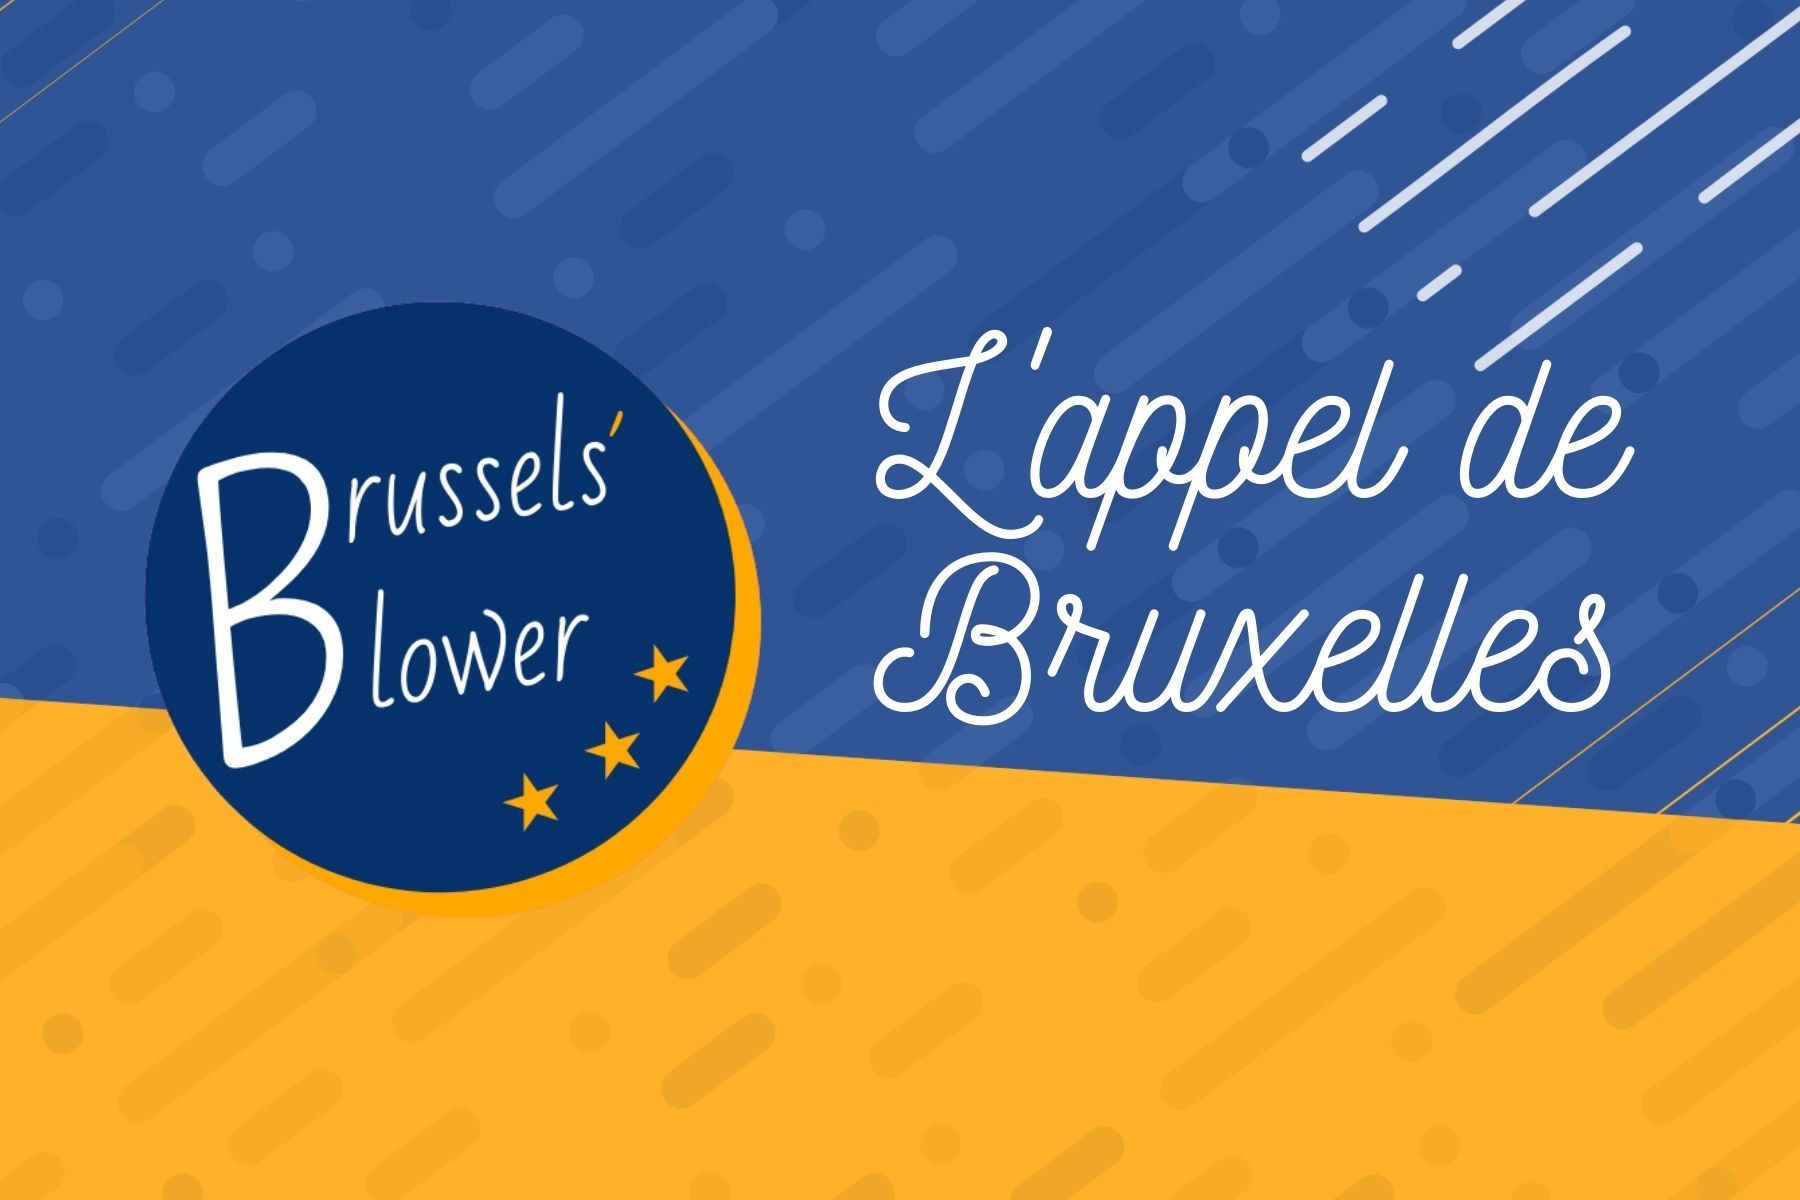 Brussels’ Blower: L’appel de Bruxelles #3 – Roxanne (Portugal)